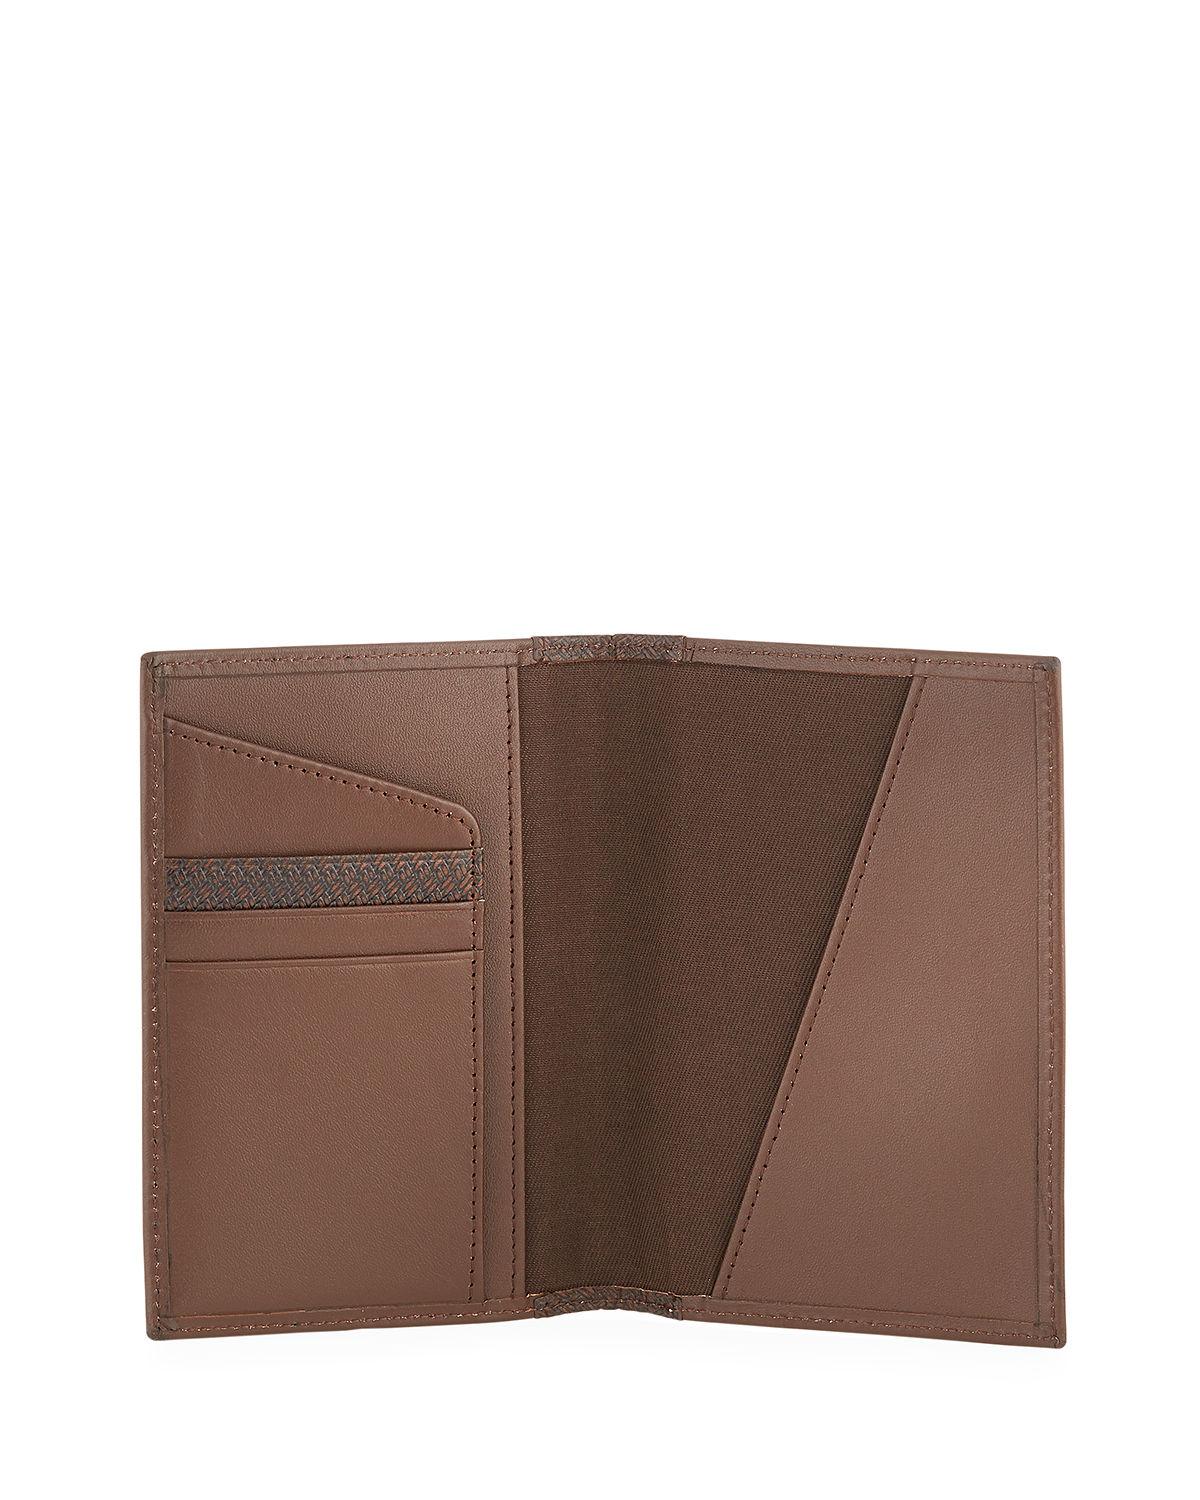 Neiman Marcus Men&#39;s Leather Passport Wallet in Brown for Men - Lyst